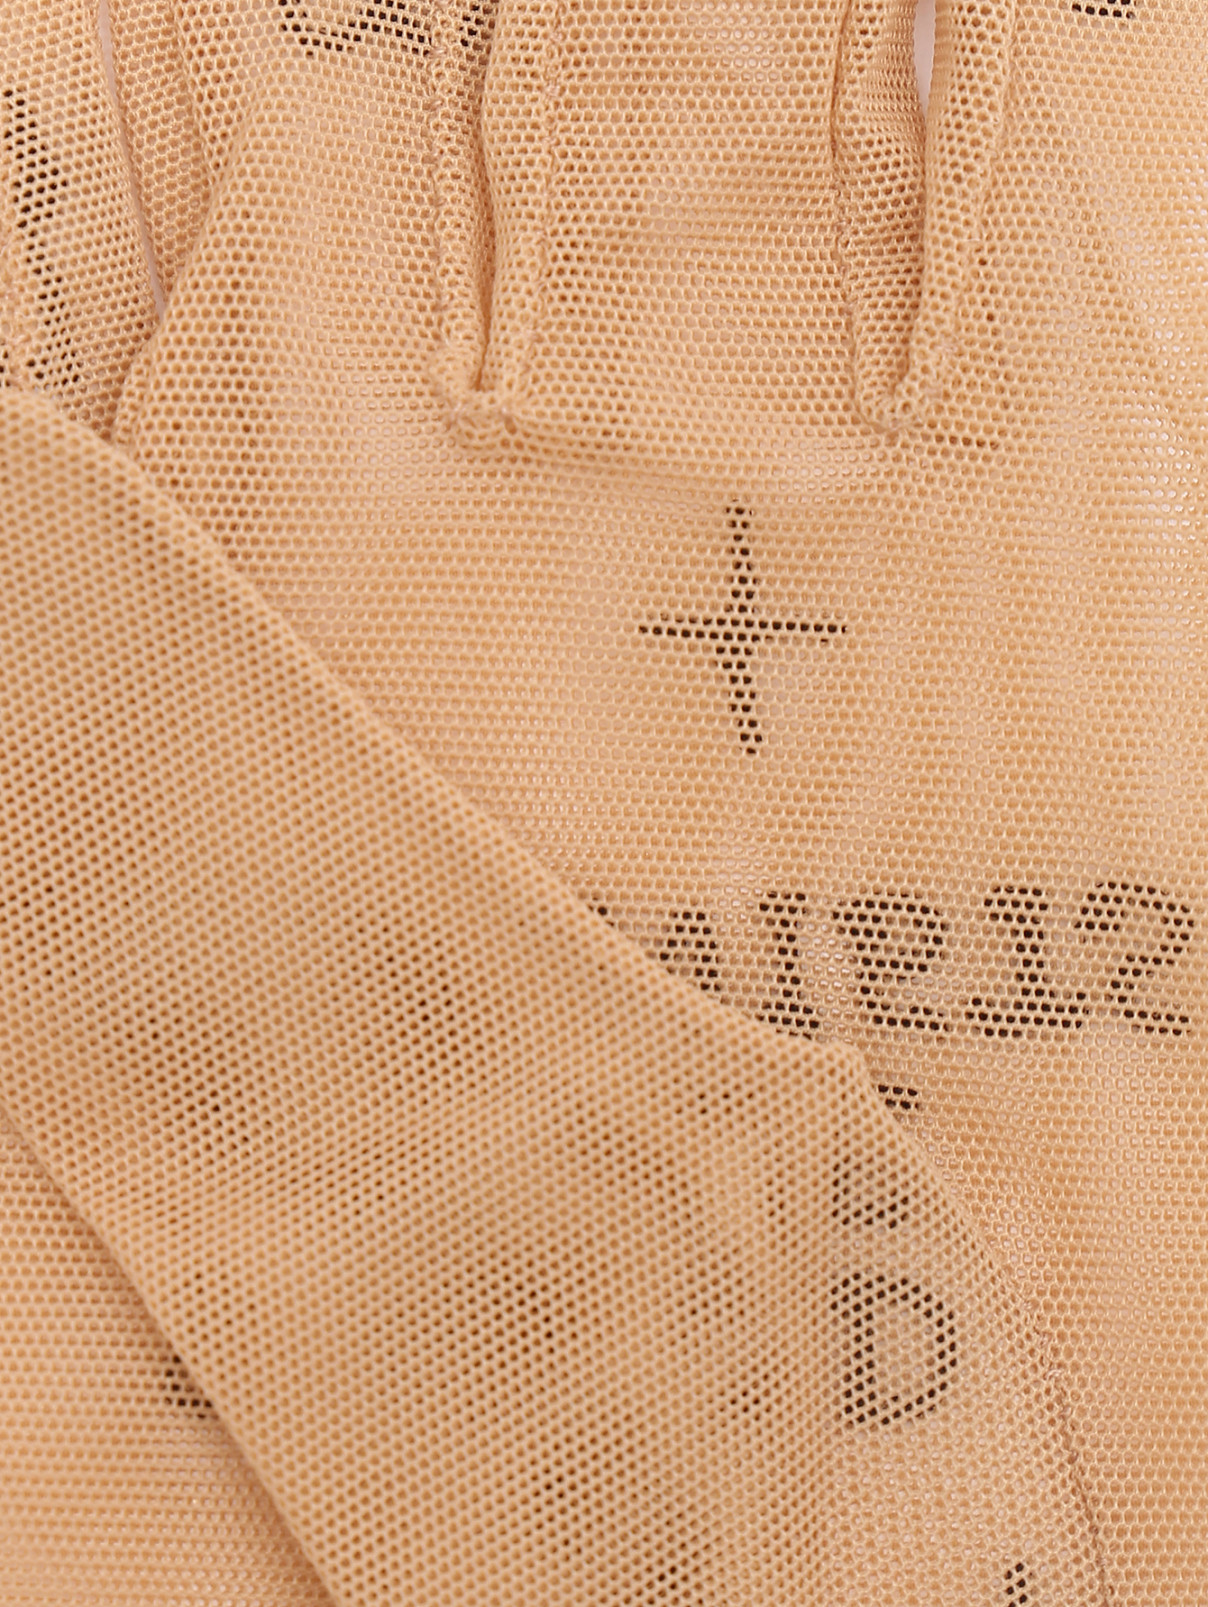 Перчатки из сетки с вышивкой Glove.me  –  Деталь1  – Цвет:  Бежевый